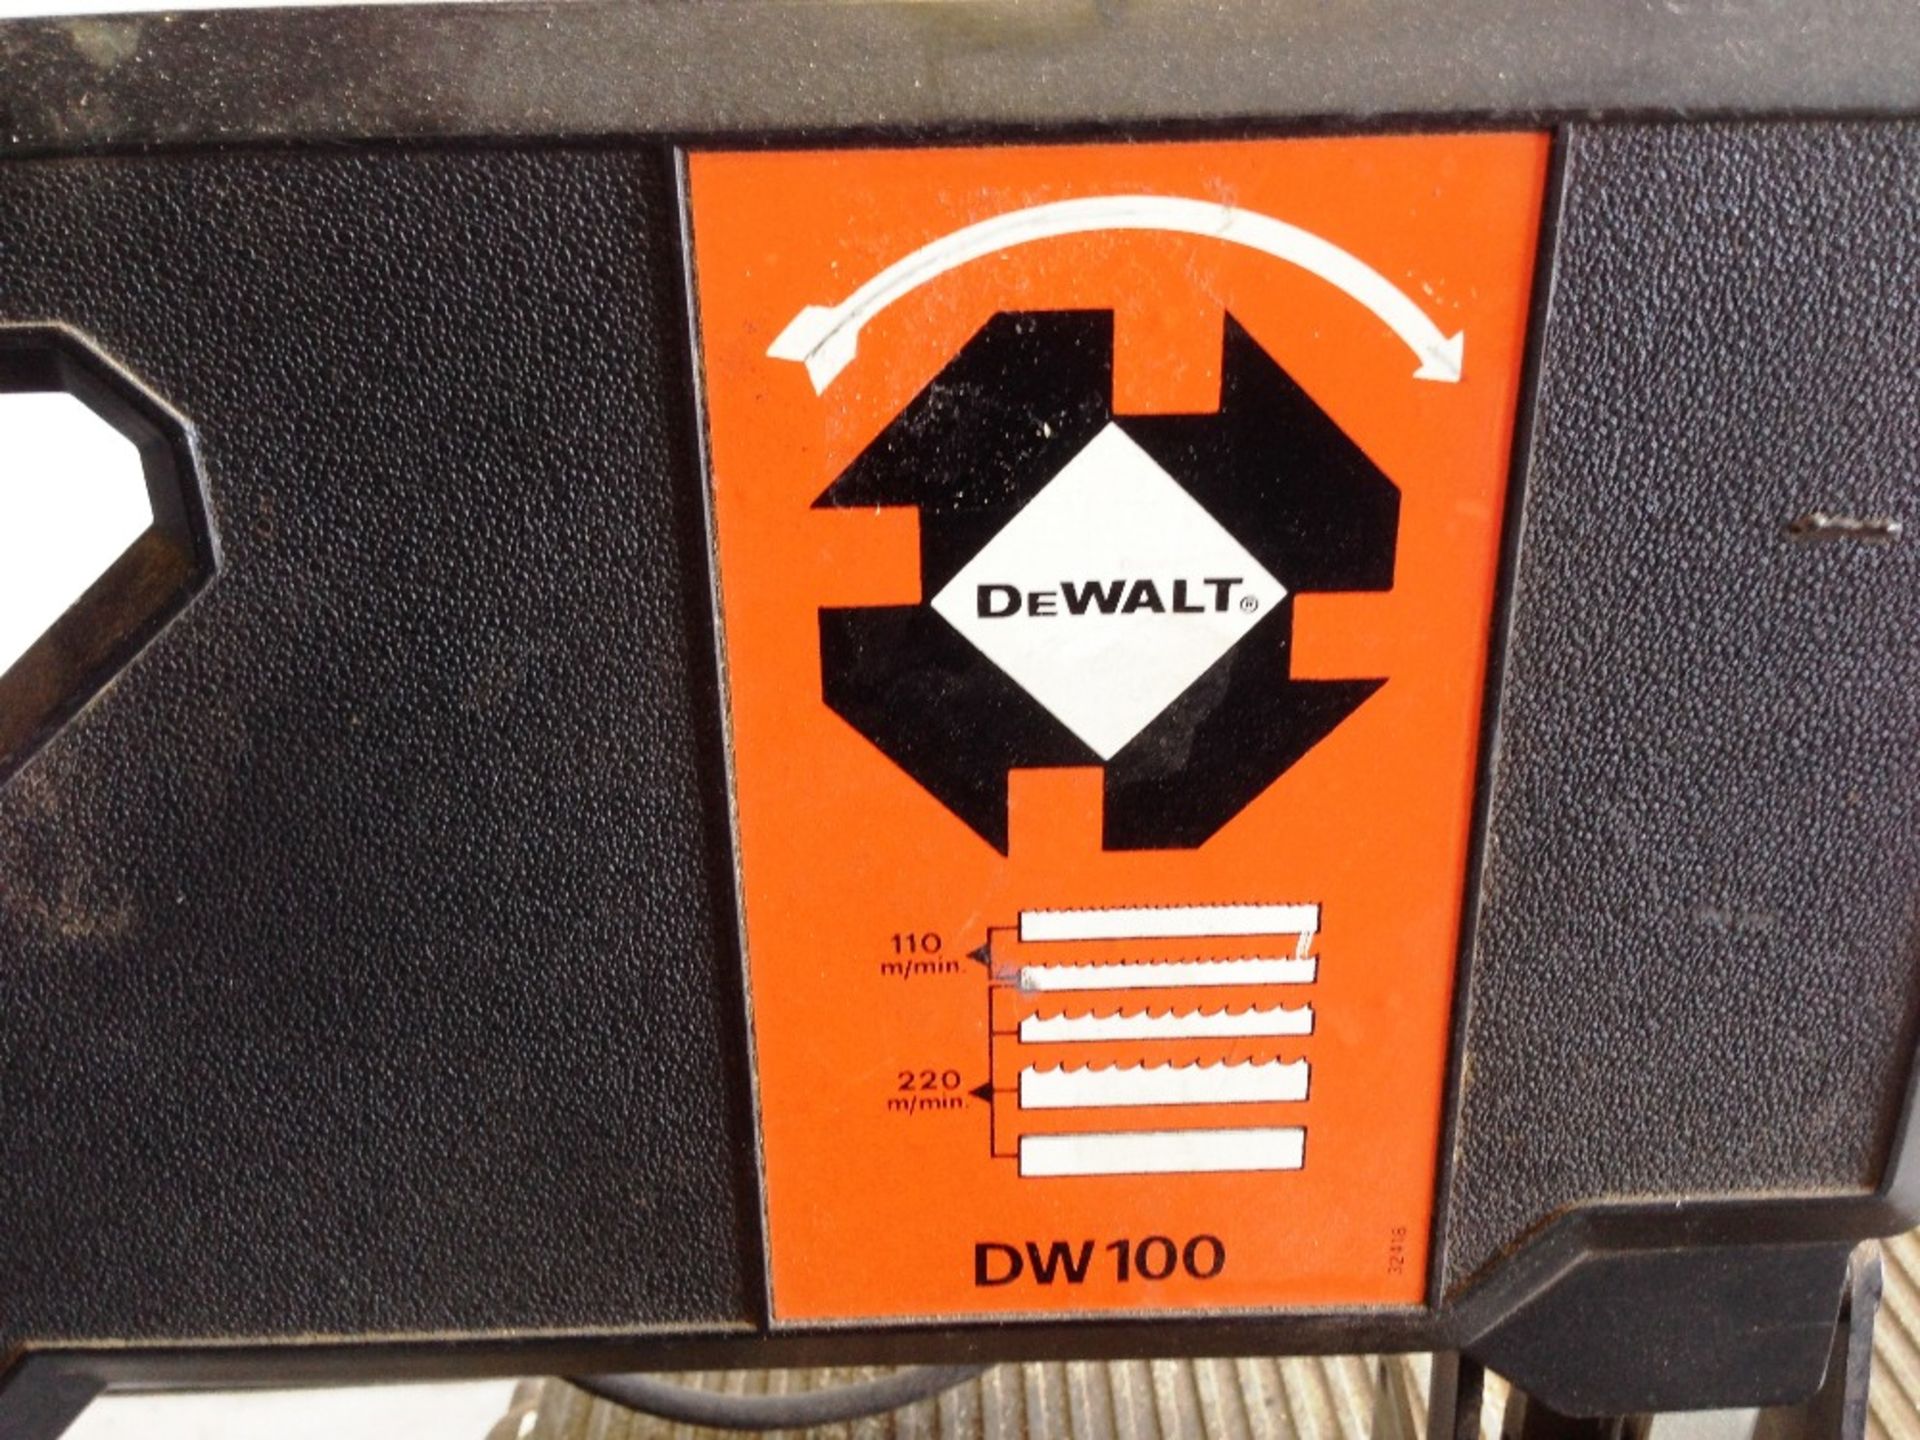 Dewalt 240V band saw Model: DW100 - Image 2 of 4